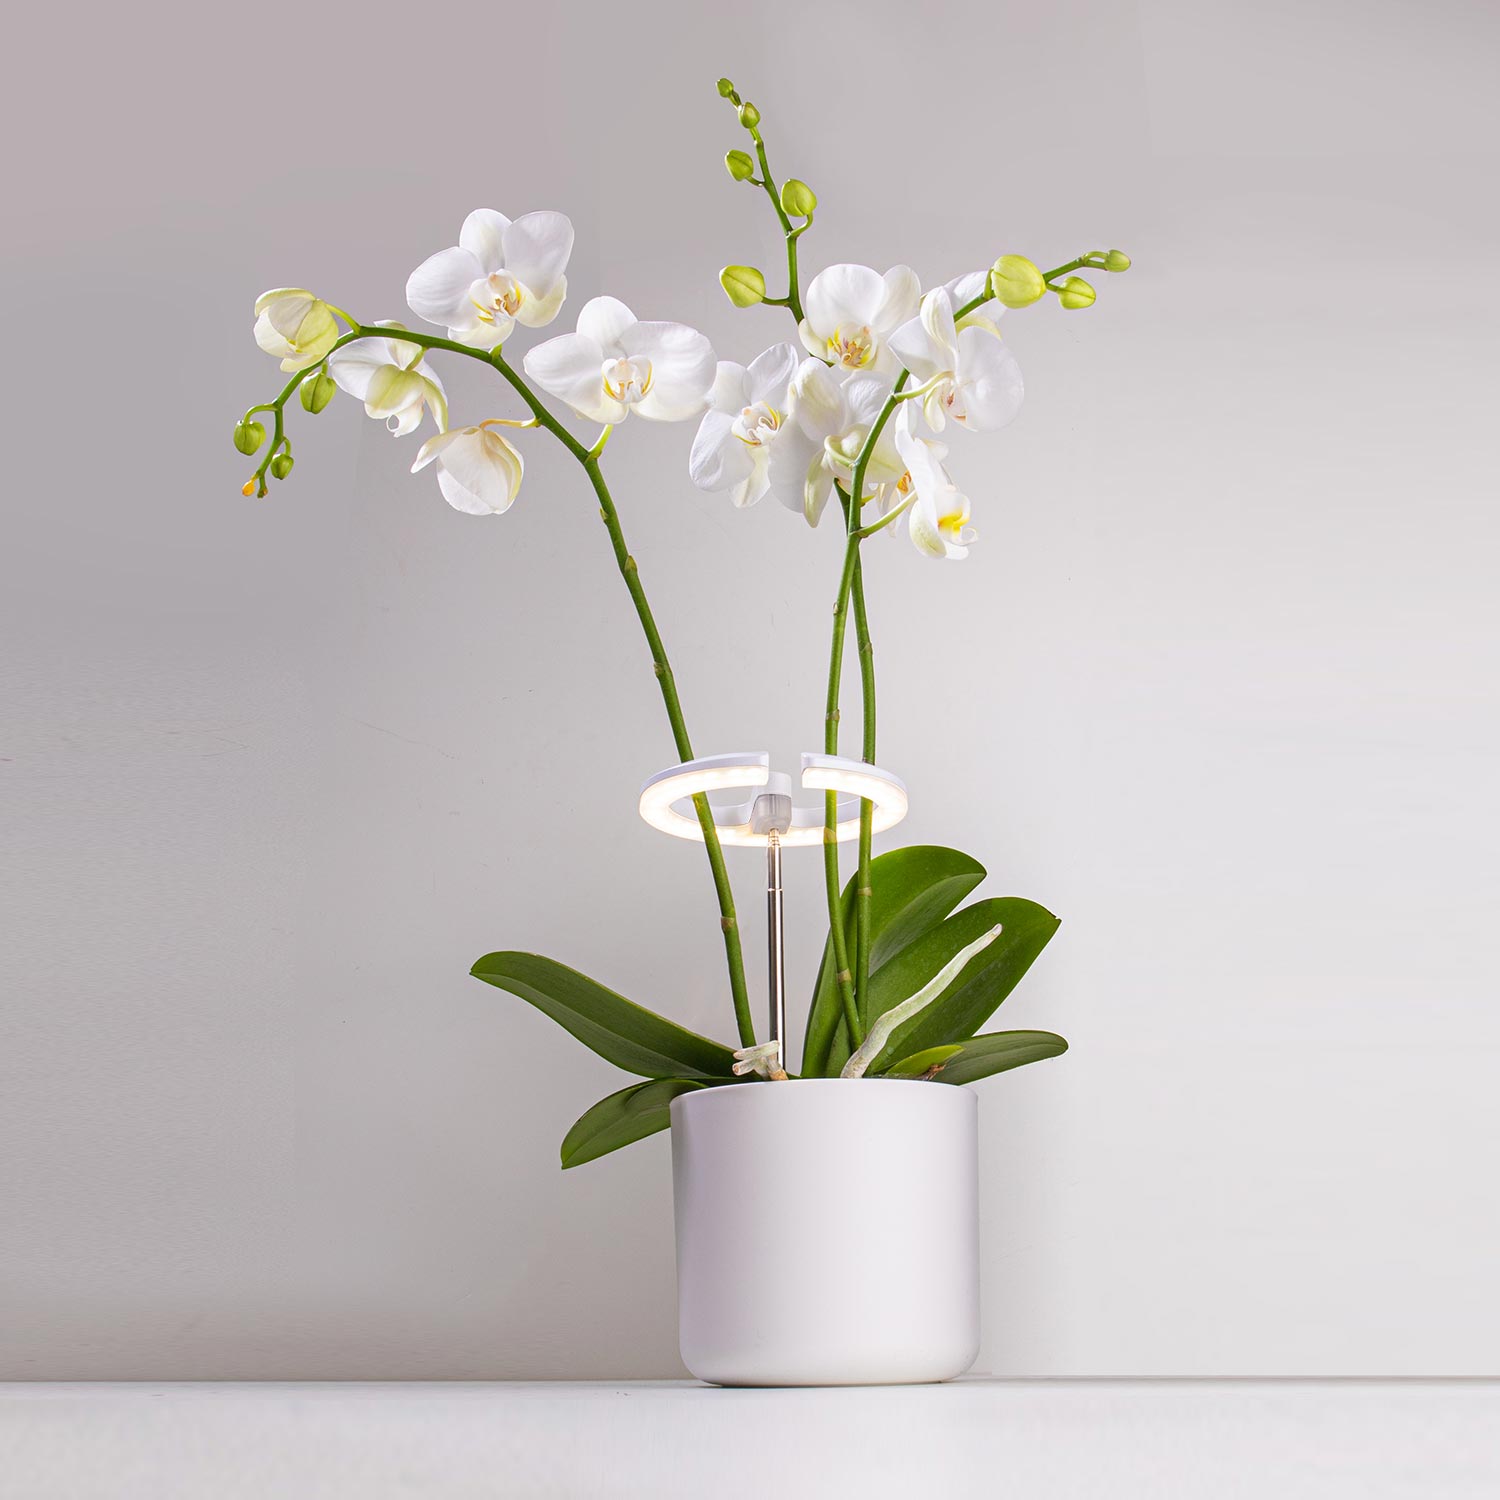 TG012 Full Spectrum Plants LED Growing Gardens Dekorasyon nga Lamp para sa Indoor nga nagtubo nga Tanum